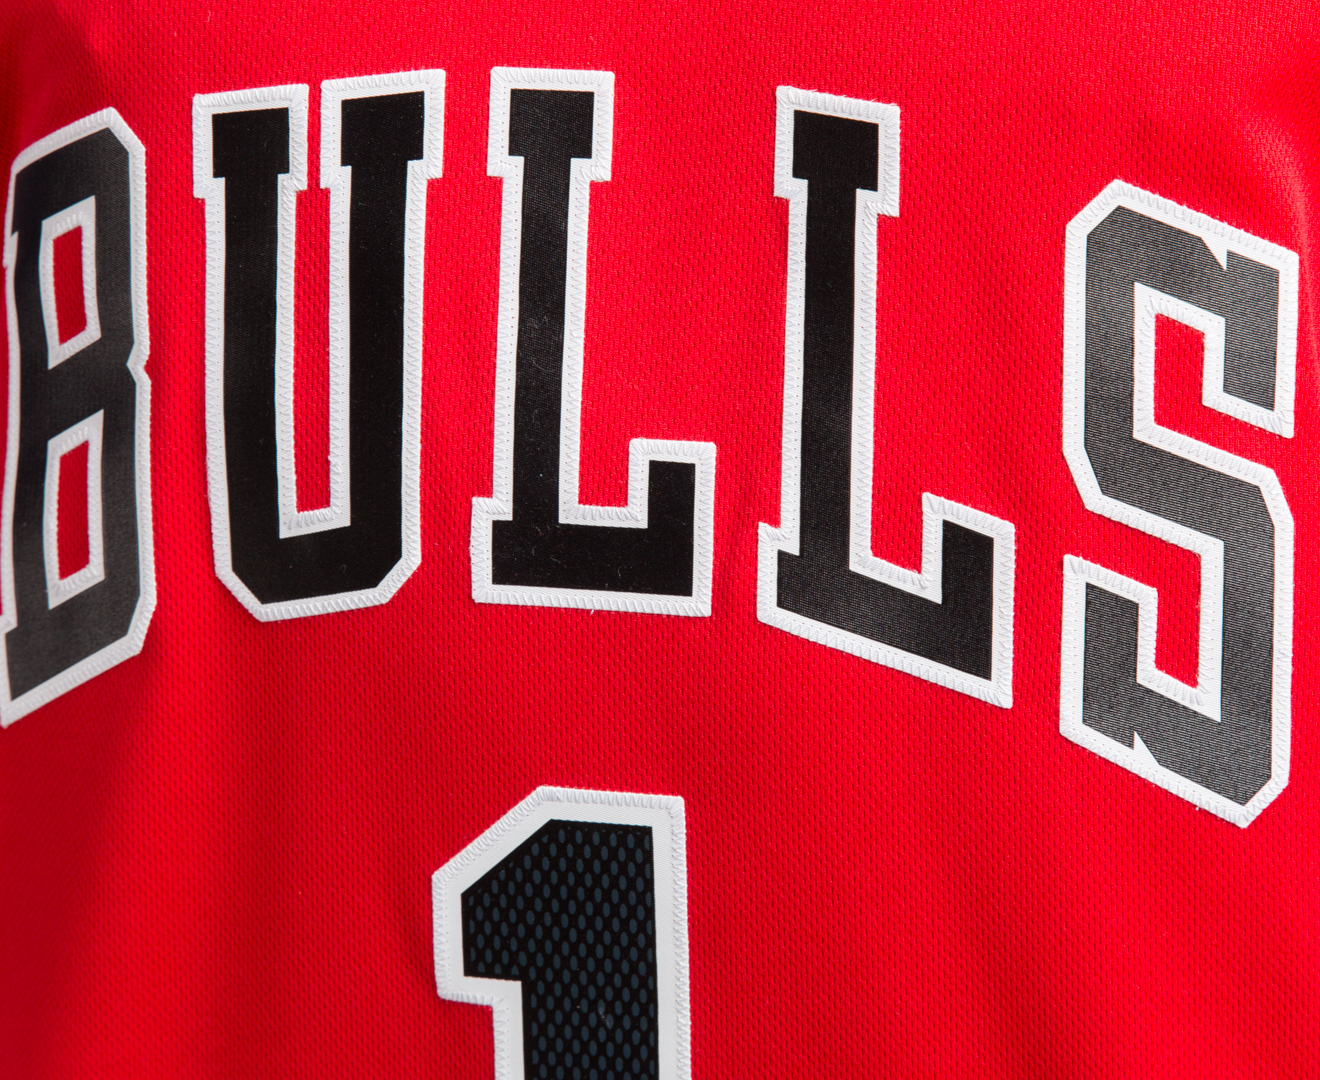 Adidas Men's Chicago Bulls 'Derrick Rose' NBA Jersey - Red